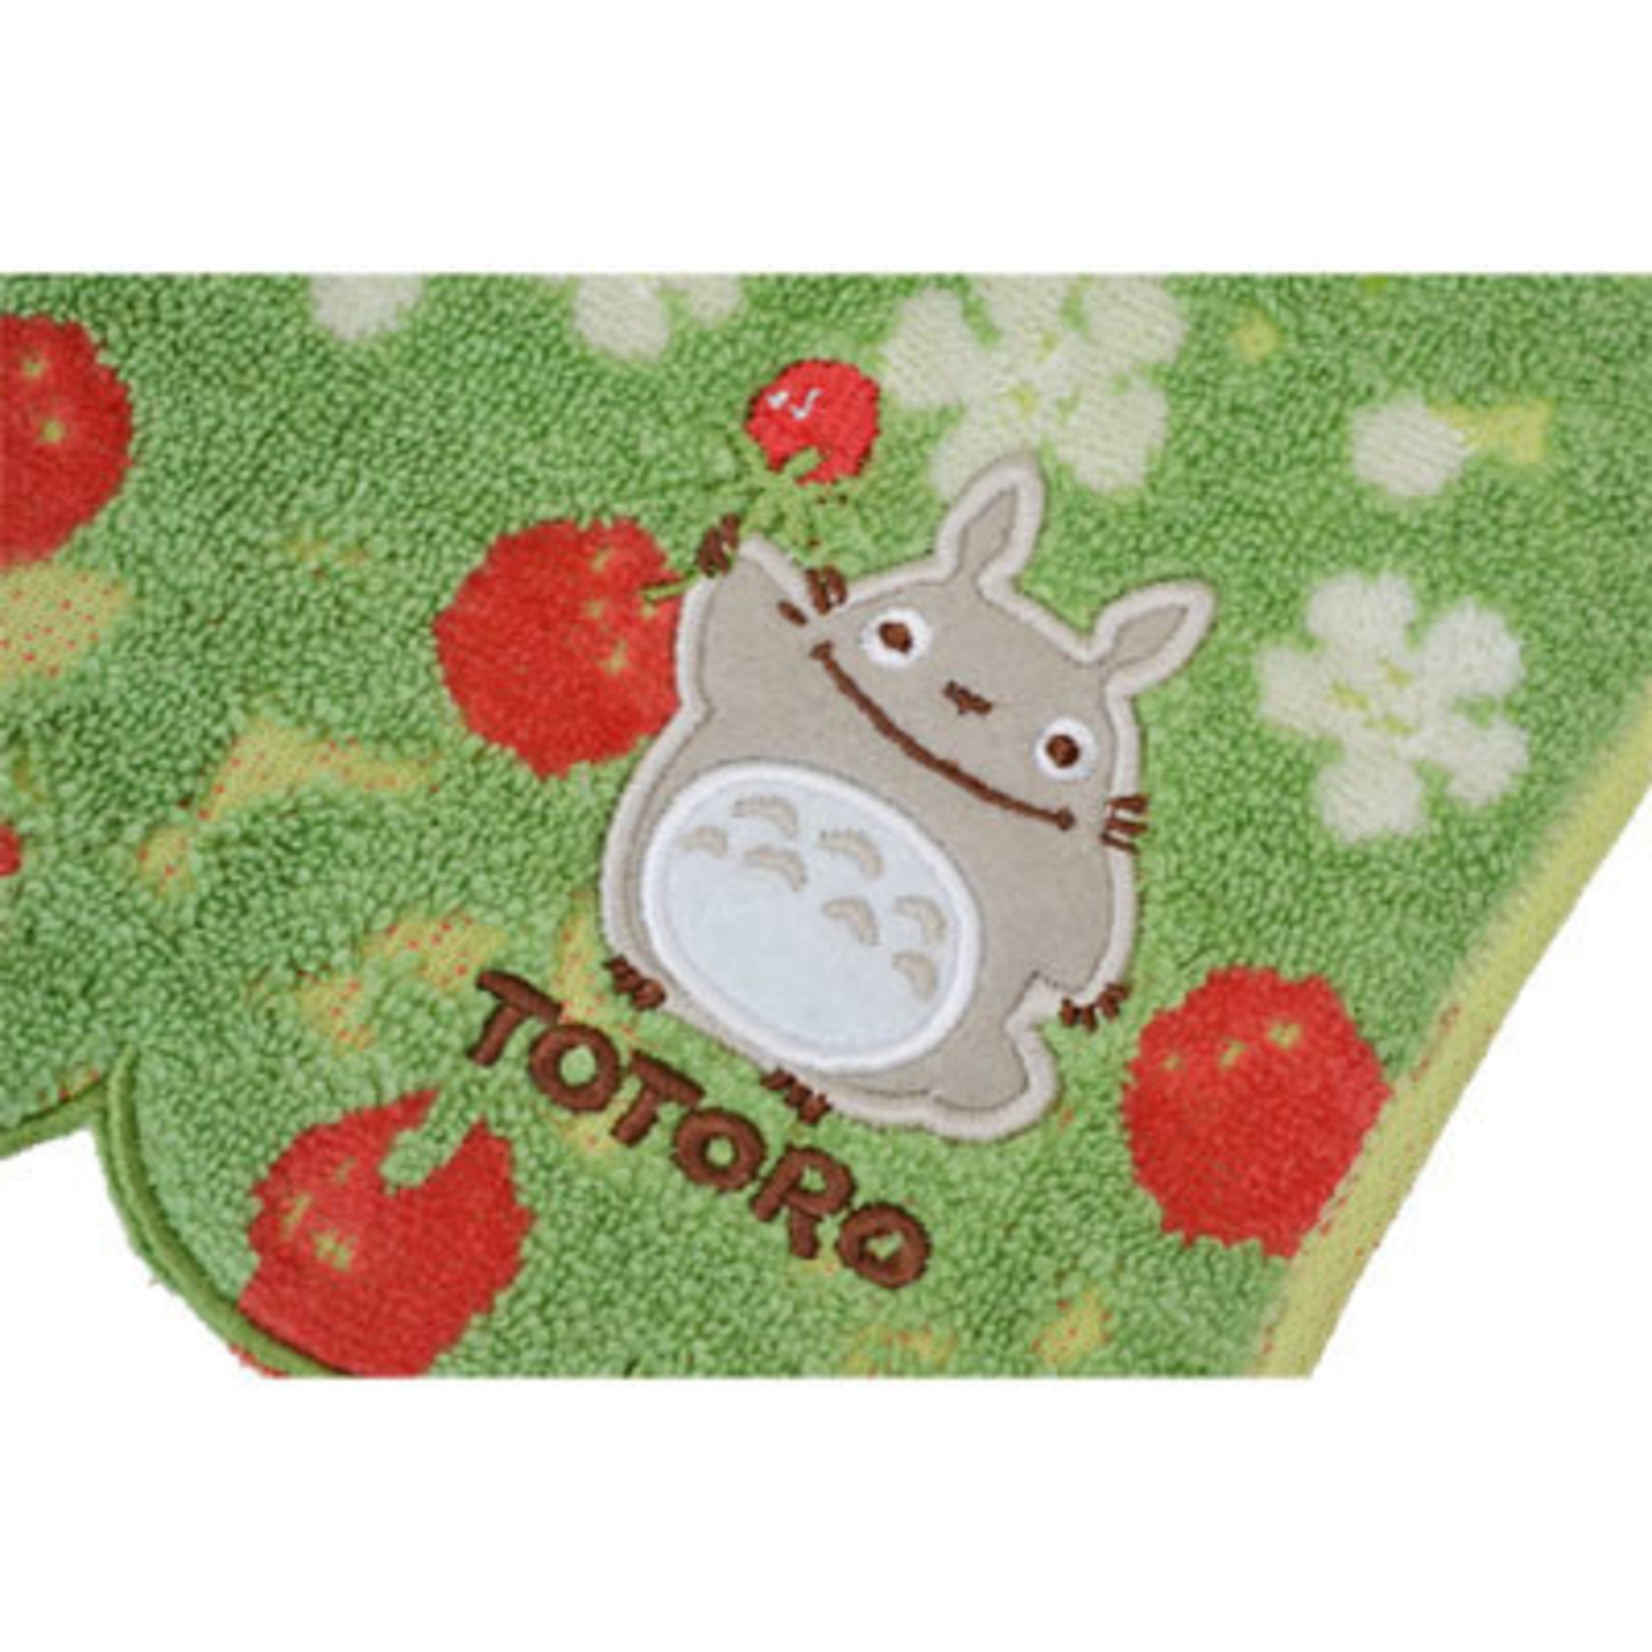 Totoro Washcloth "Satsuki Hare" - 1005029200